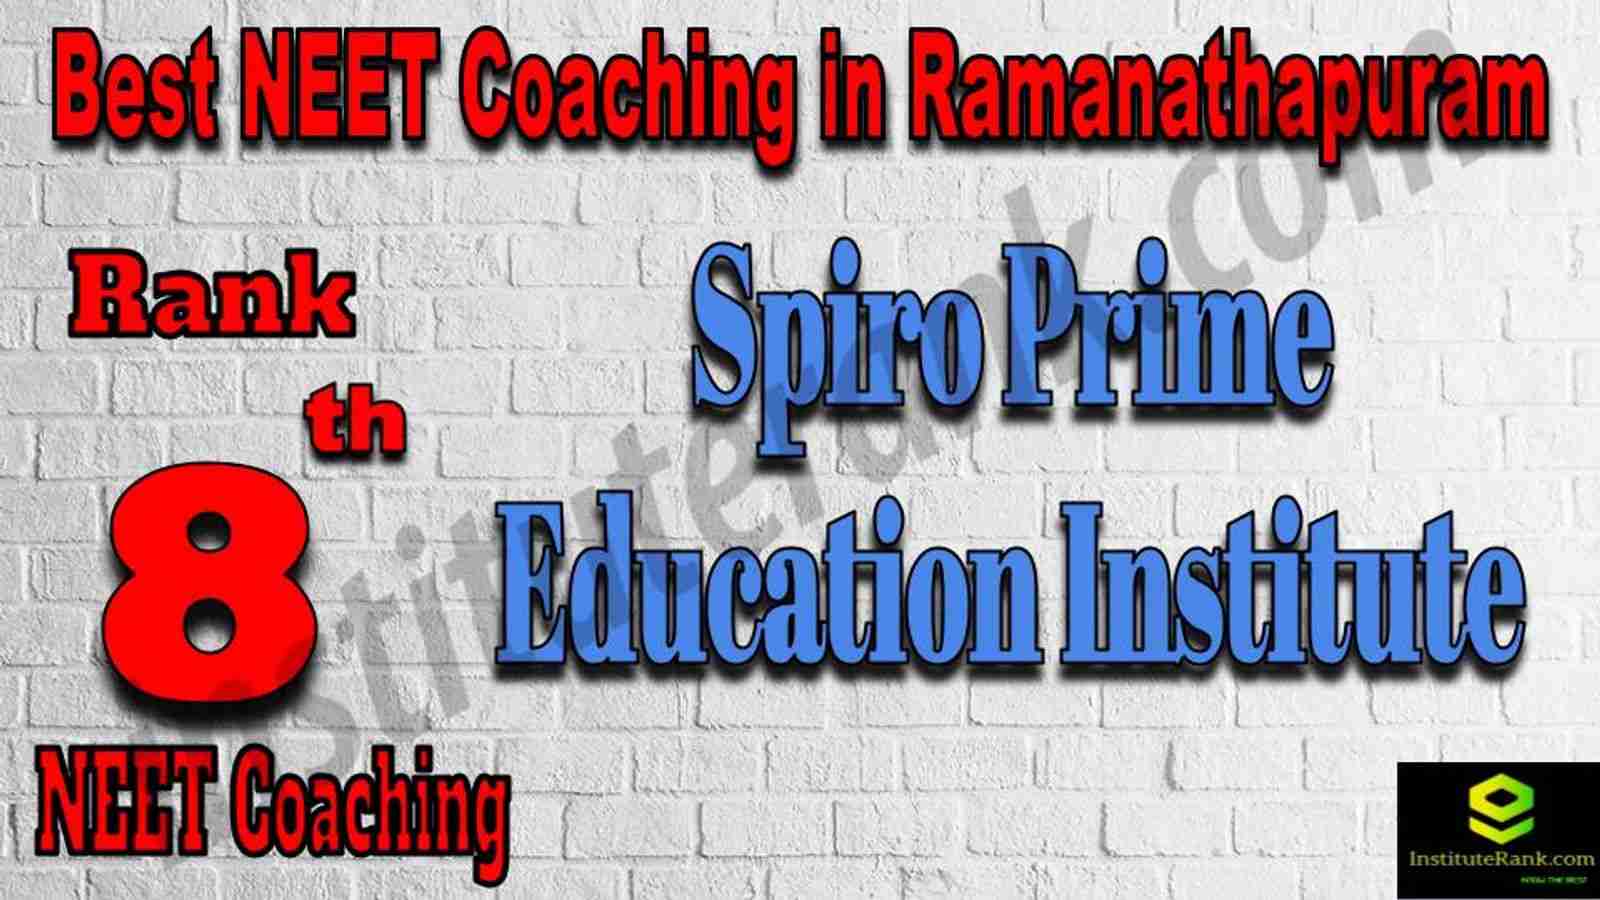 8th Best NEET Coaching in Ramanathapuram